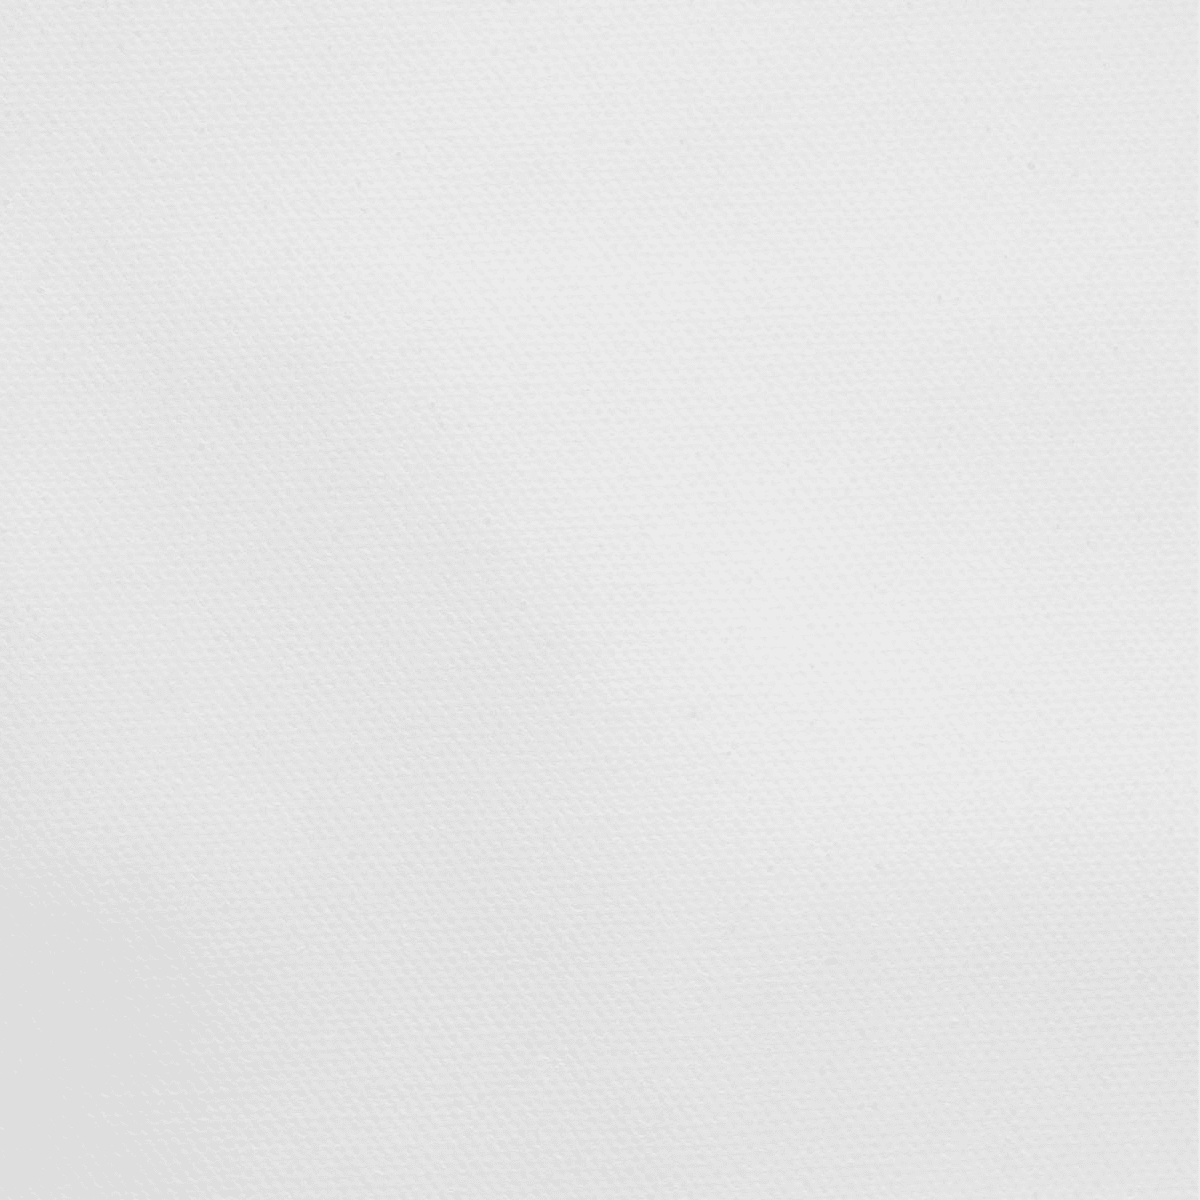 FUJIFILM Artist's Canvas Roll Paper (24 x 35') 600007175 B&H